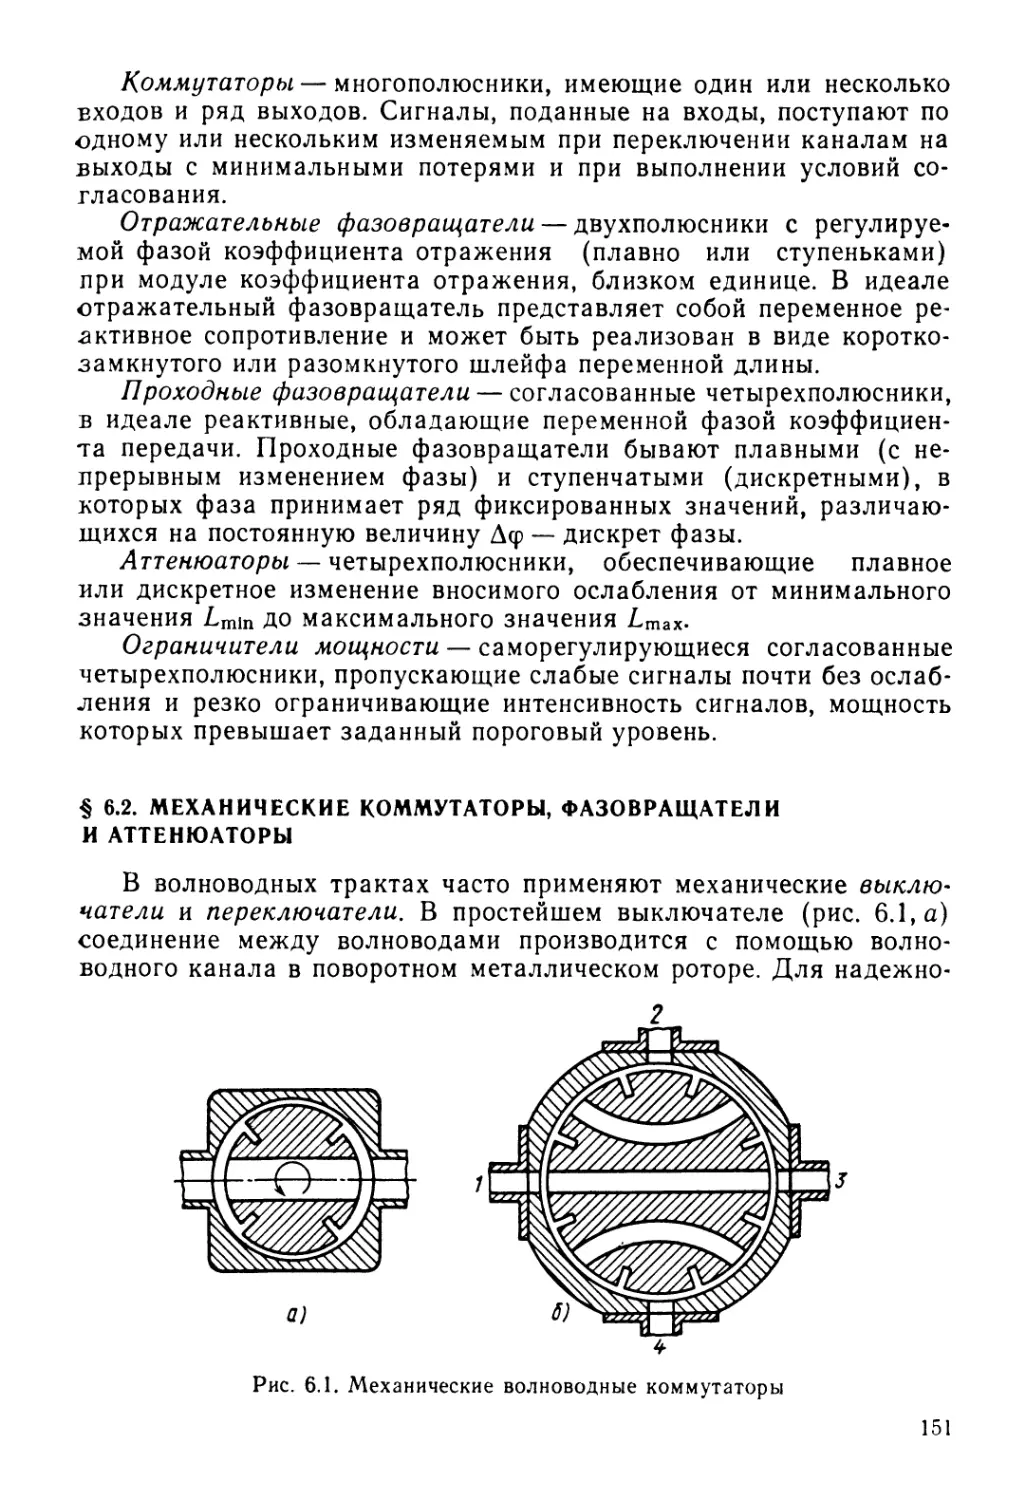 § 6.2. Механические коммутаторы, фазовращатели и аттенюаторы